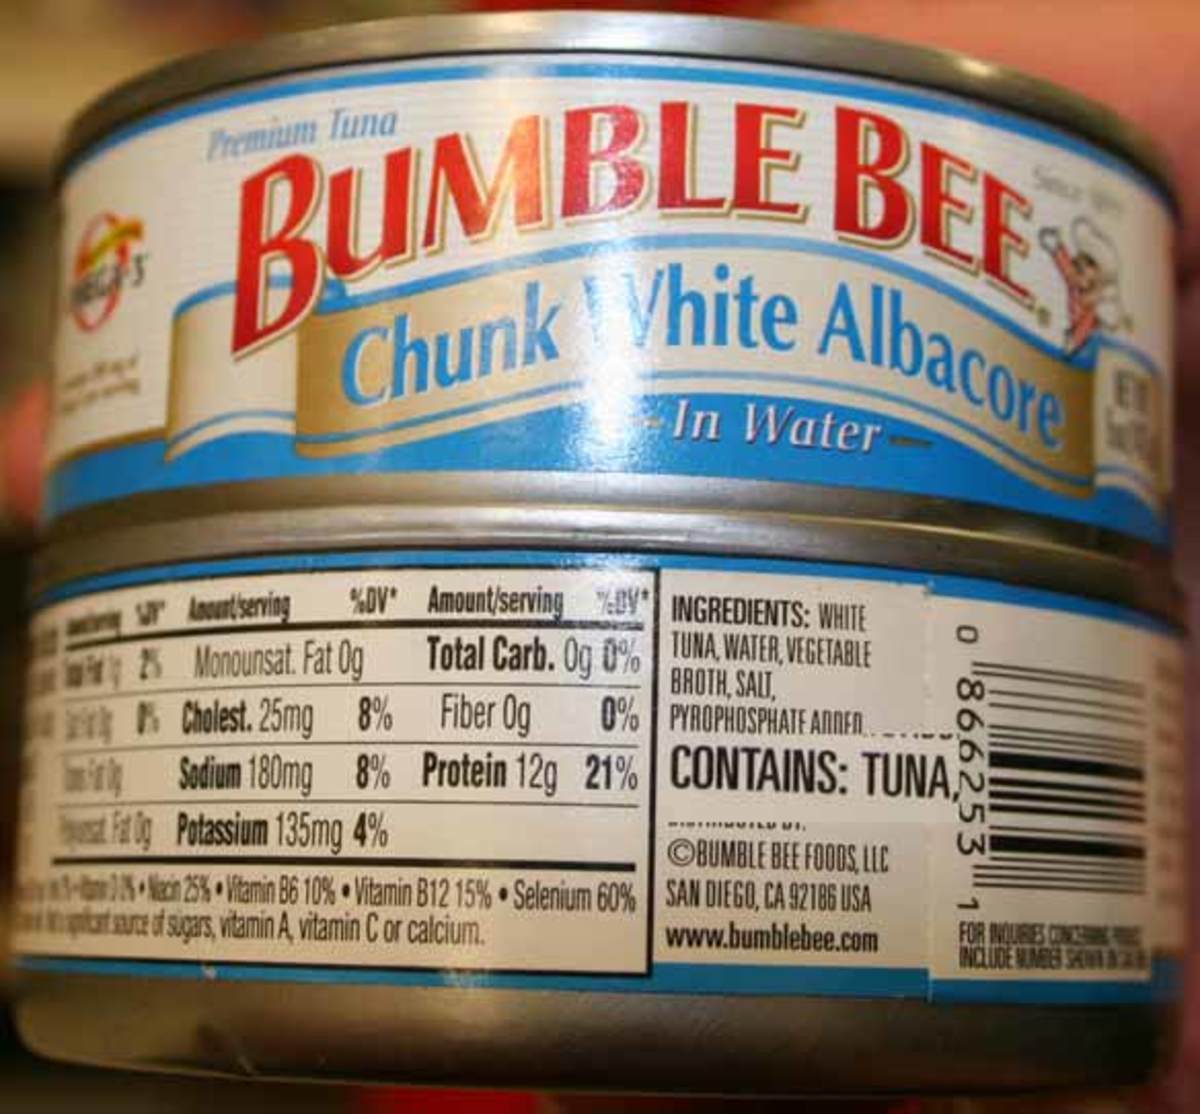 Bumble Bee Chunk White Albacore tuna can 